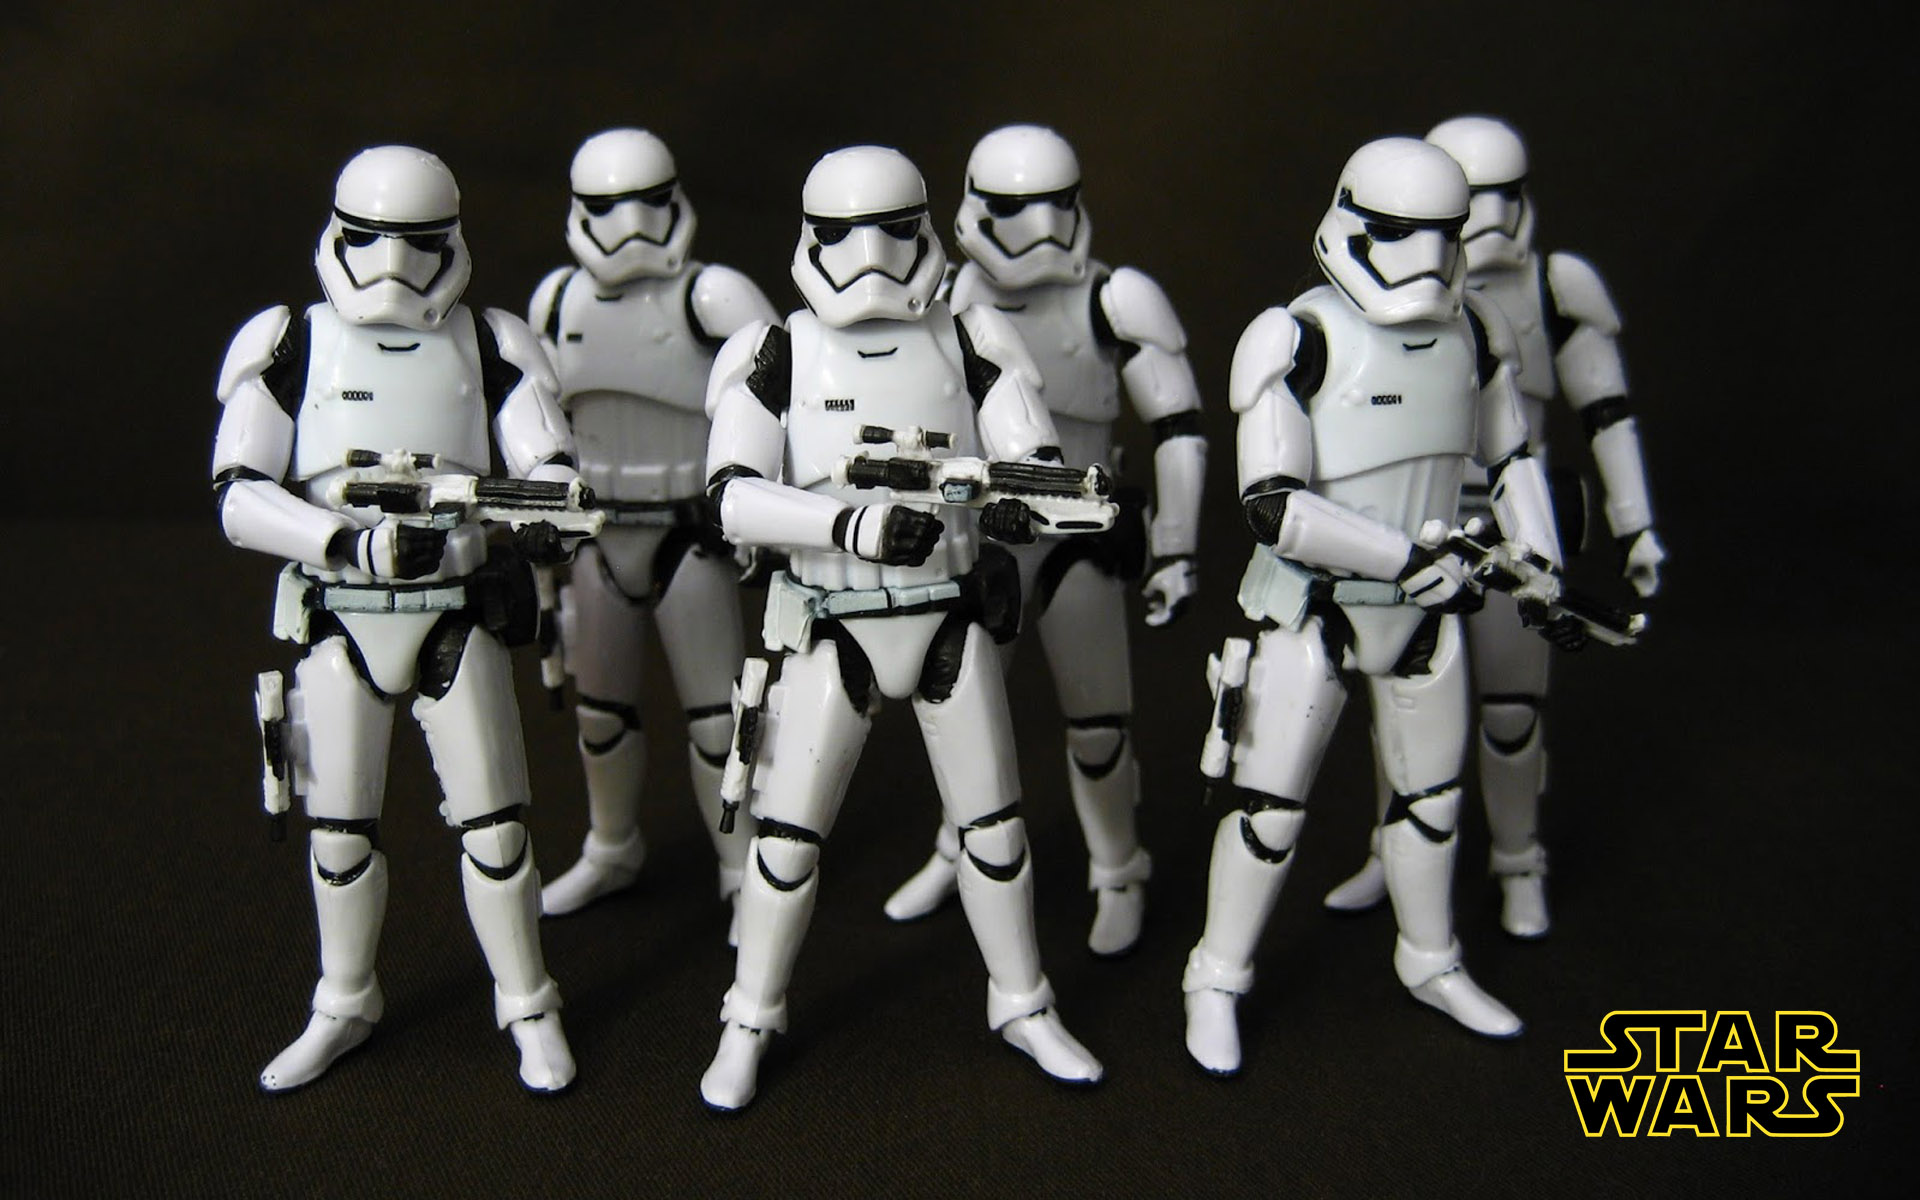 Star Wars First Order Stormtrooper Desktop Wallpaper Hd For Mobile